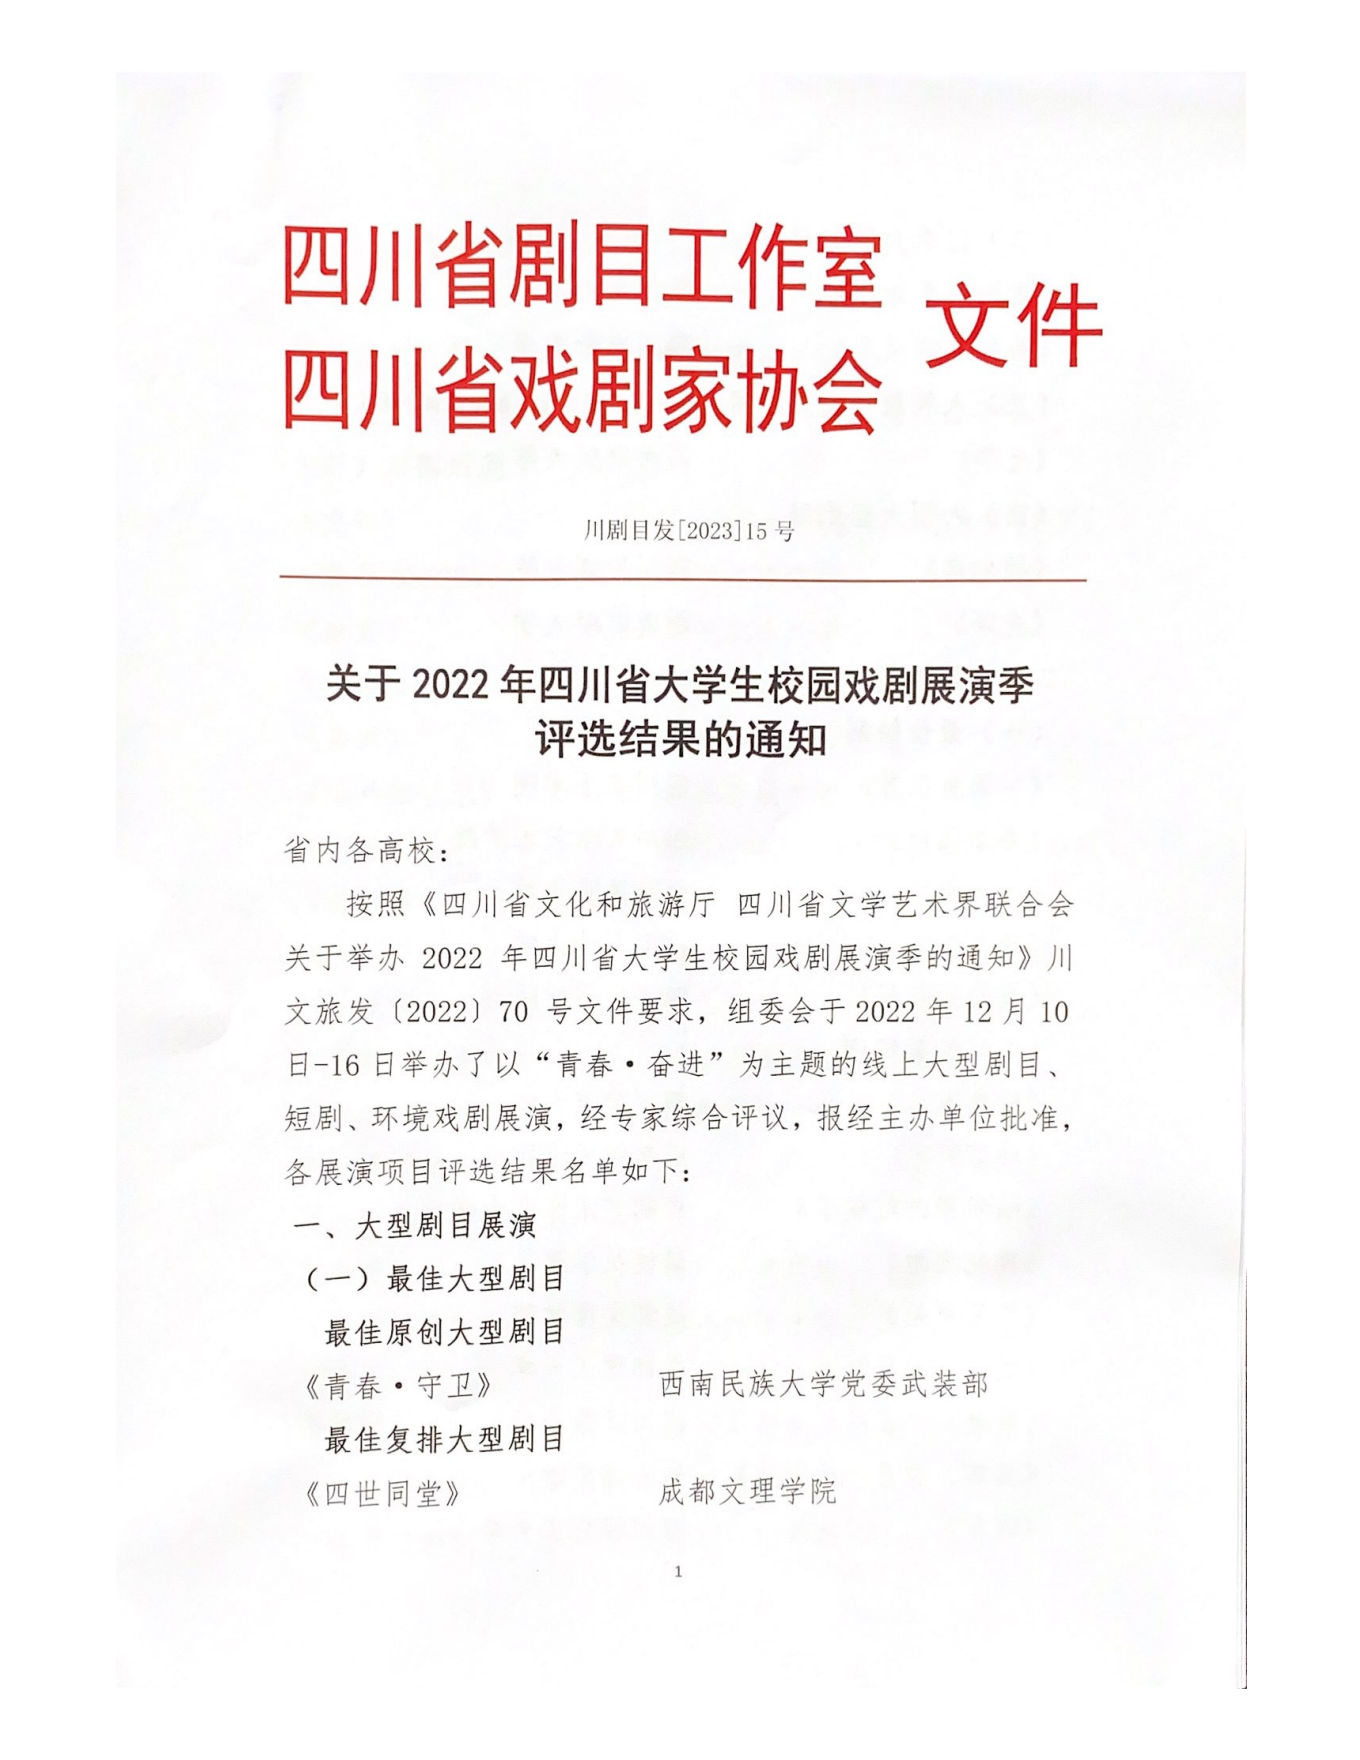 2022年四川省大学生校园戏剧展演季评选结果通知_00.png